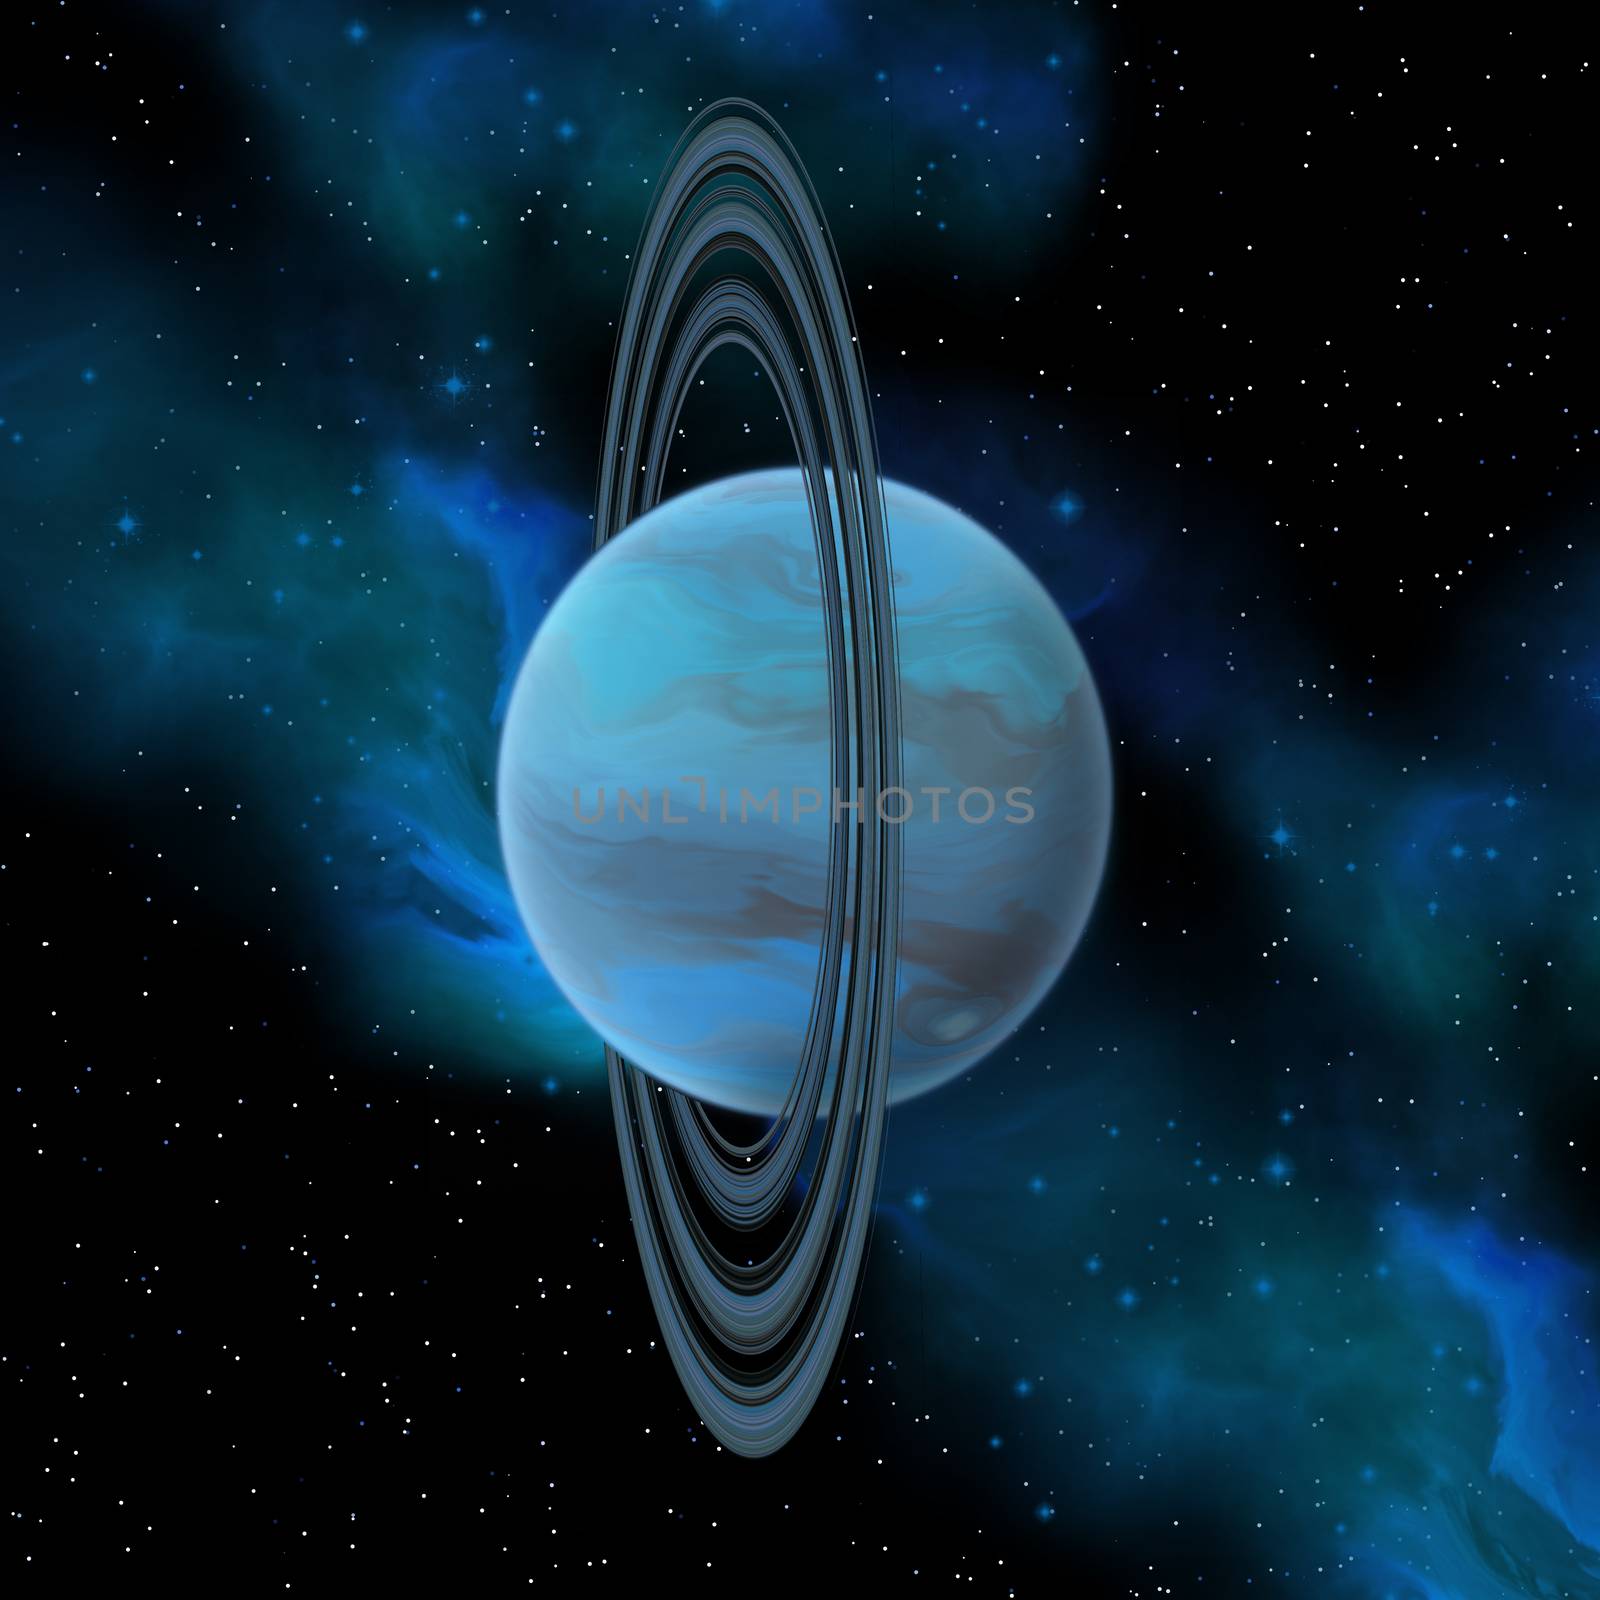 Uranus Planet by Catmando